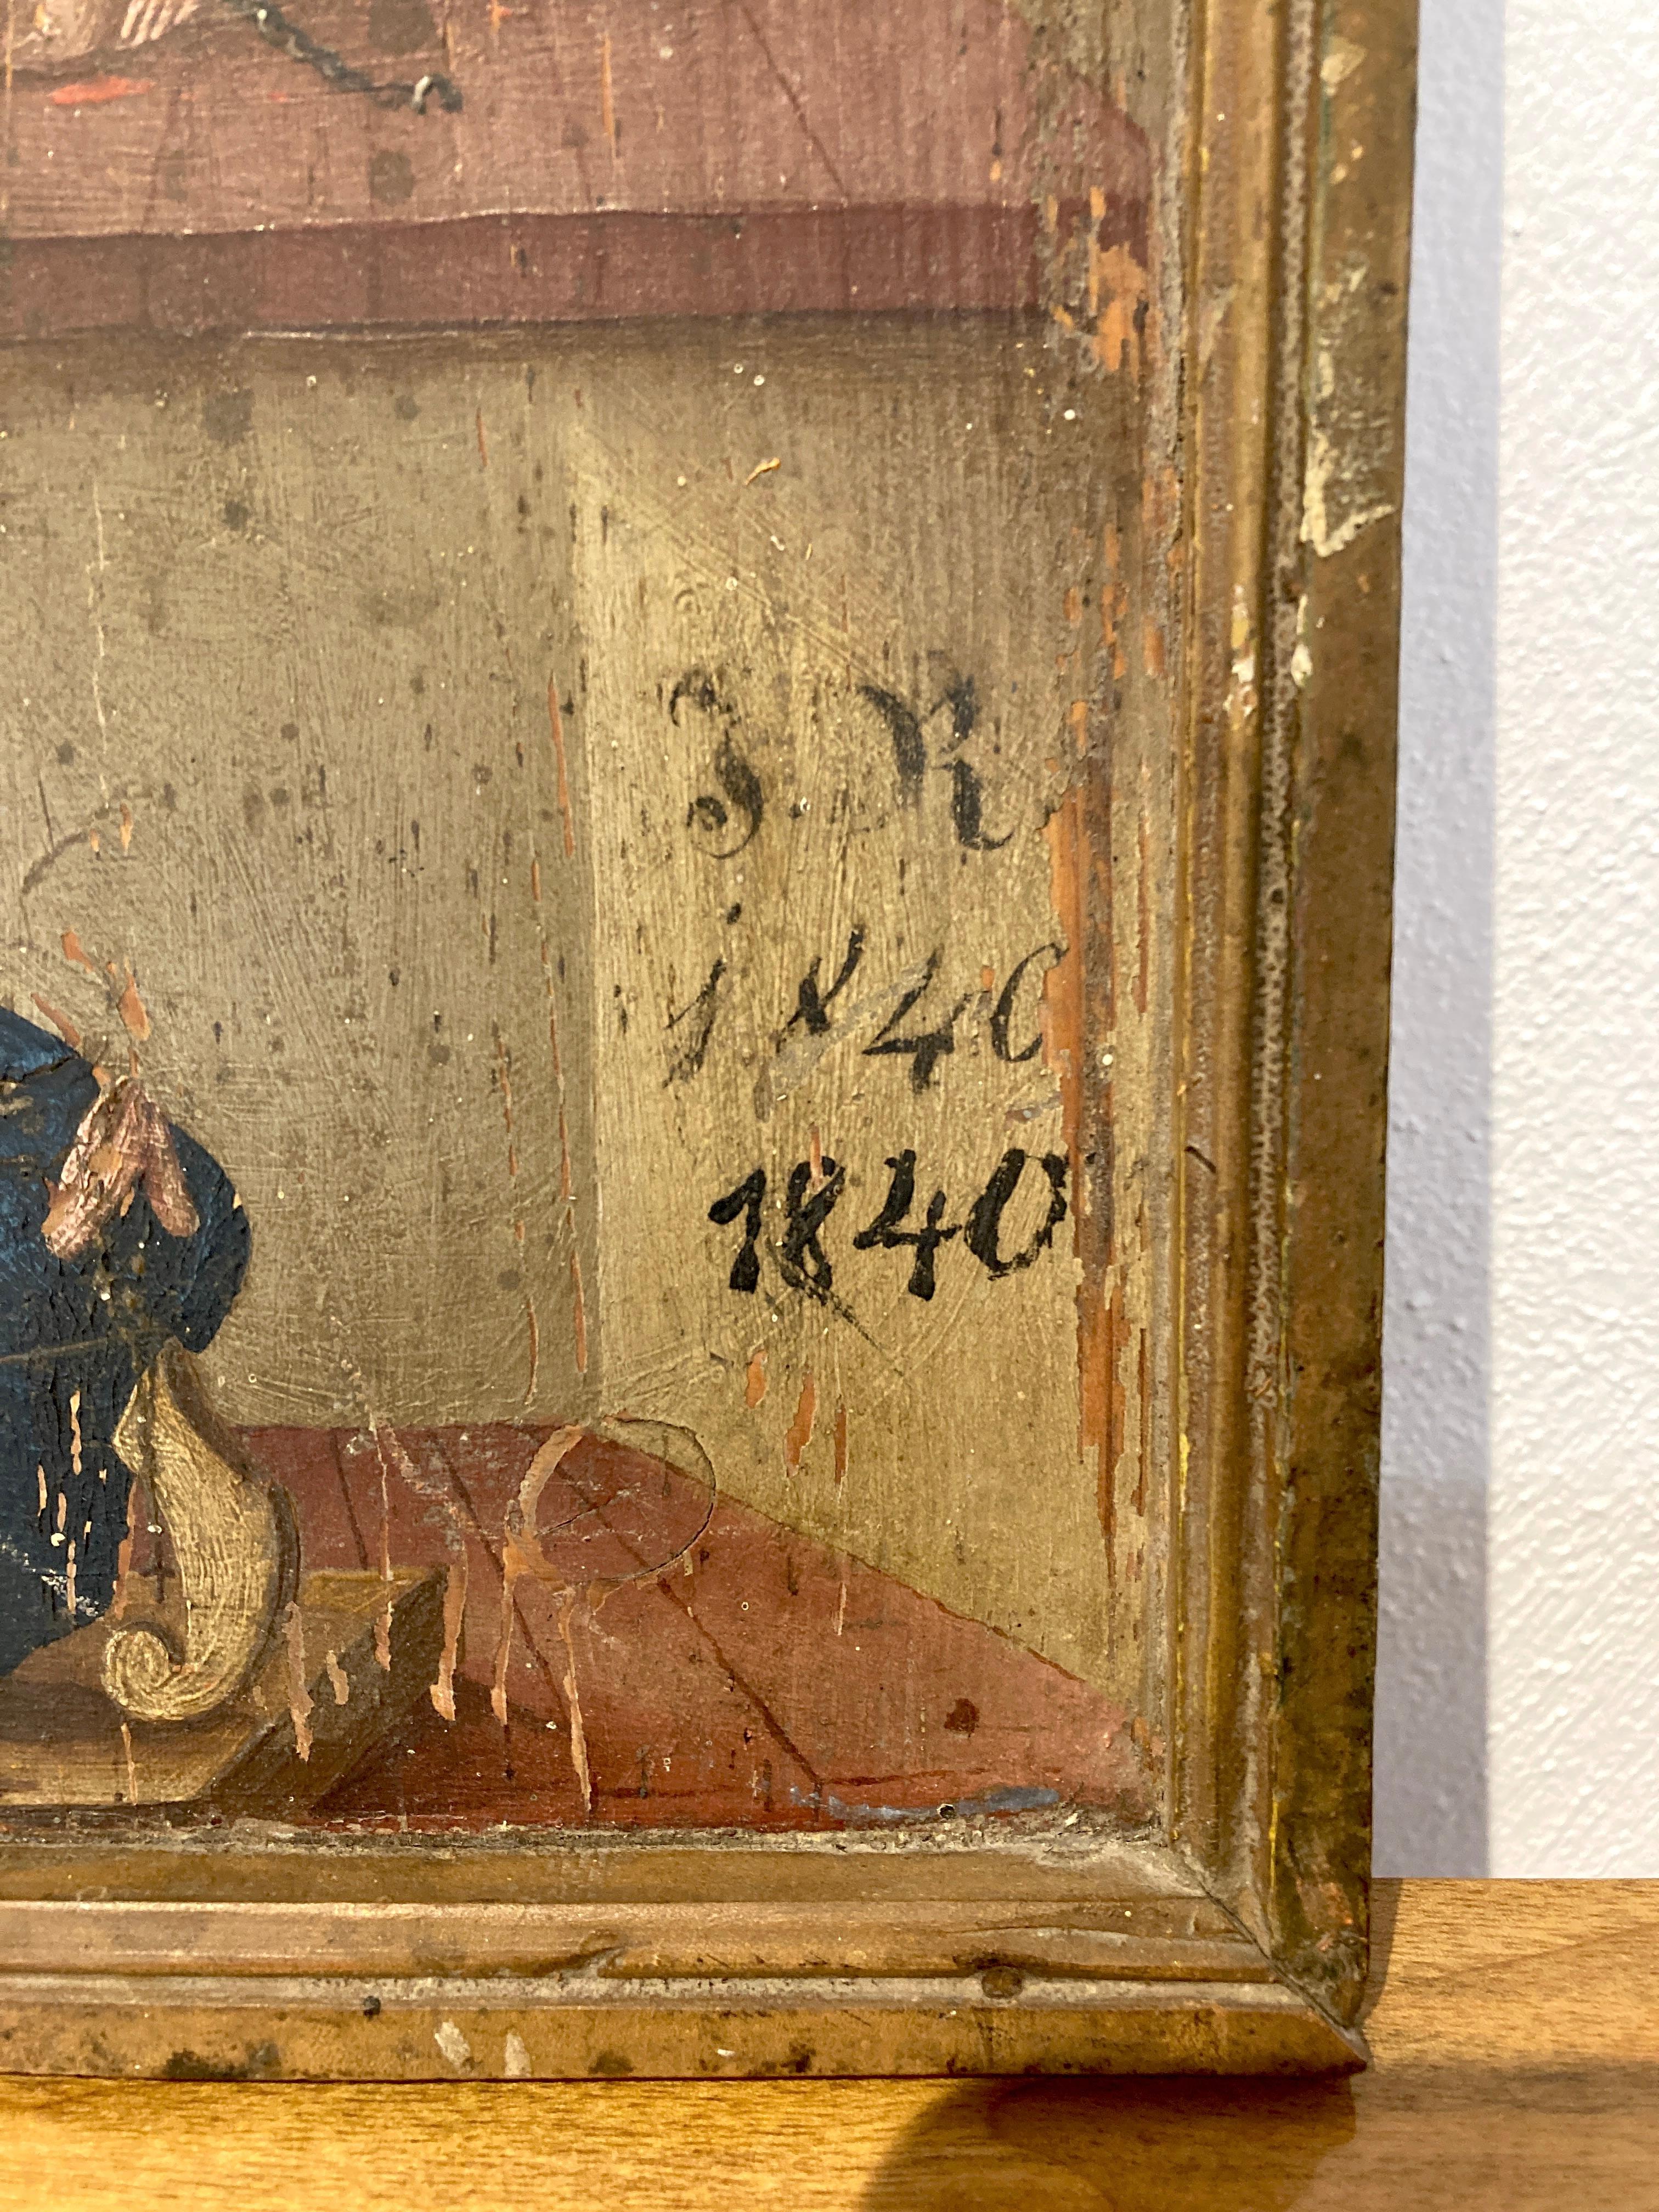 Bayerische Votivtafel 19. Jahrhundert.
Jesus am Geißelungspfeiler, Öl auf Holz, datiert 1840.
Sehr schöner Originalzustand.